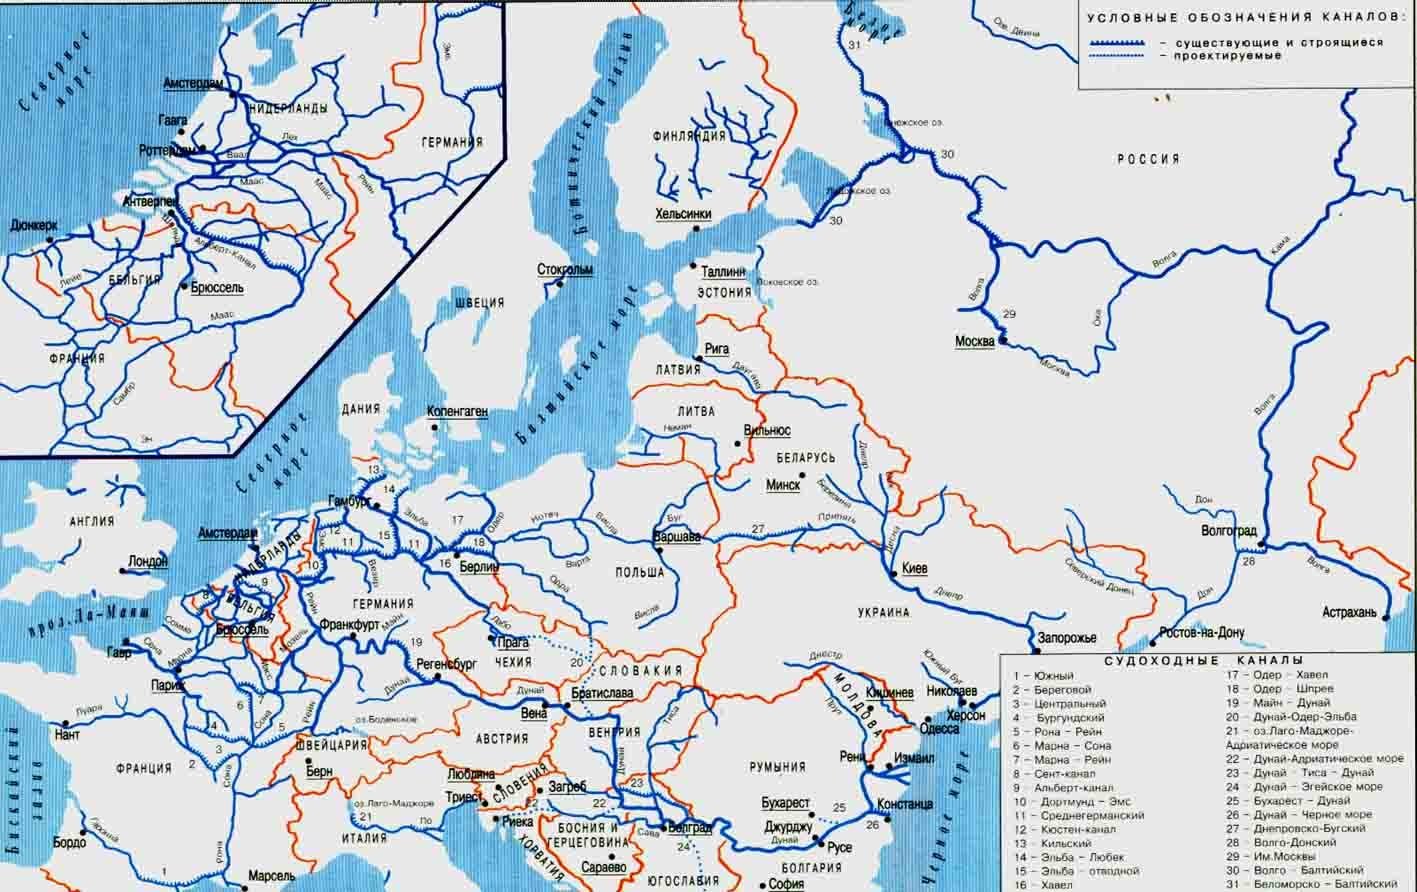 Внутренние воды пути. Судоходные реки зарубежной Европы на контурной карте. Карта водных путей Восточной Европы. Карта речных путей Европы. Речная транспортная система Европы Дунай.